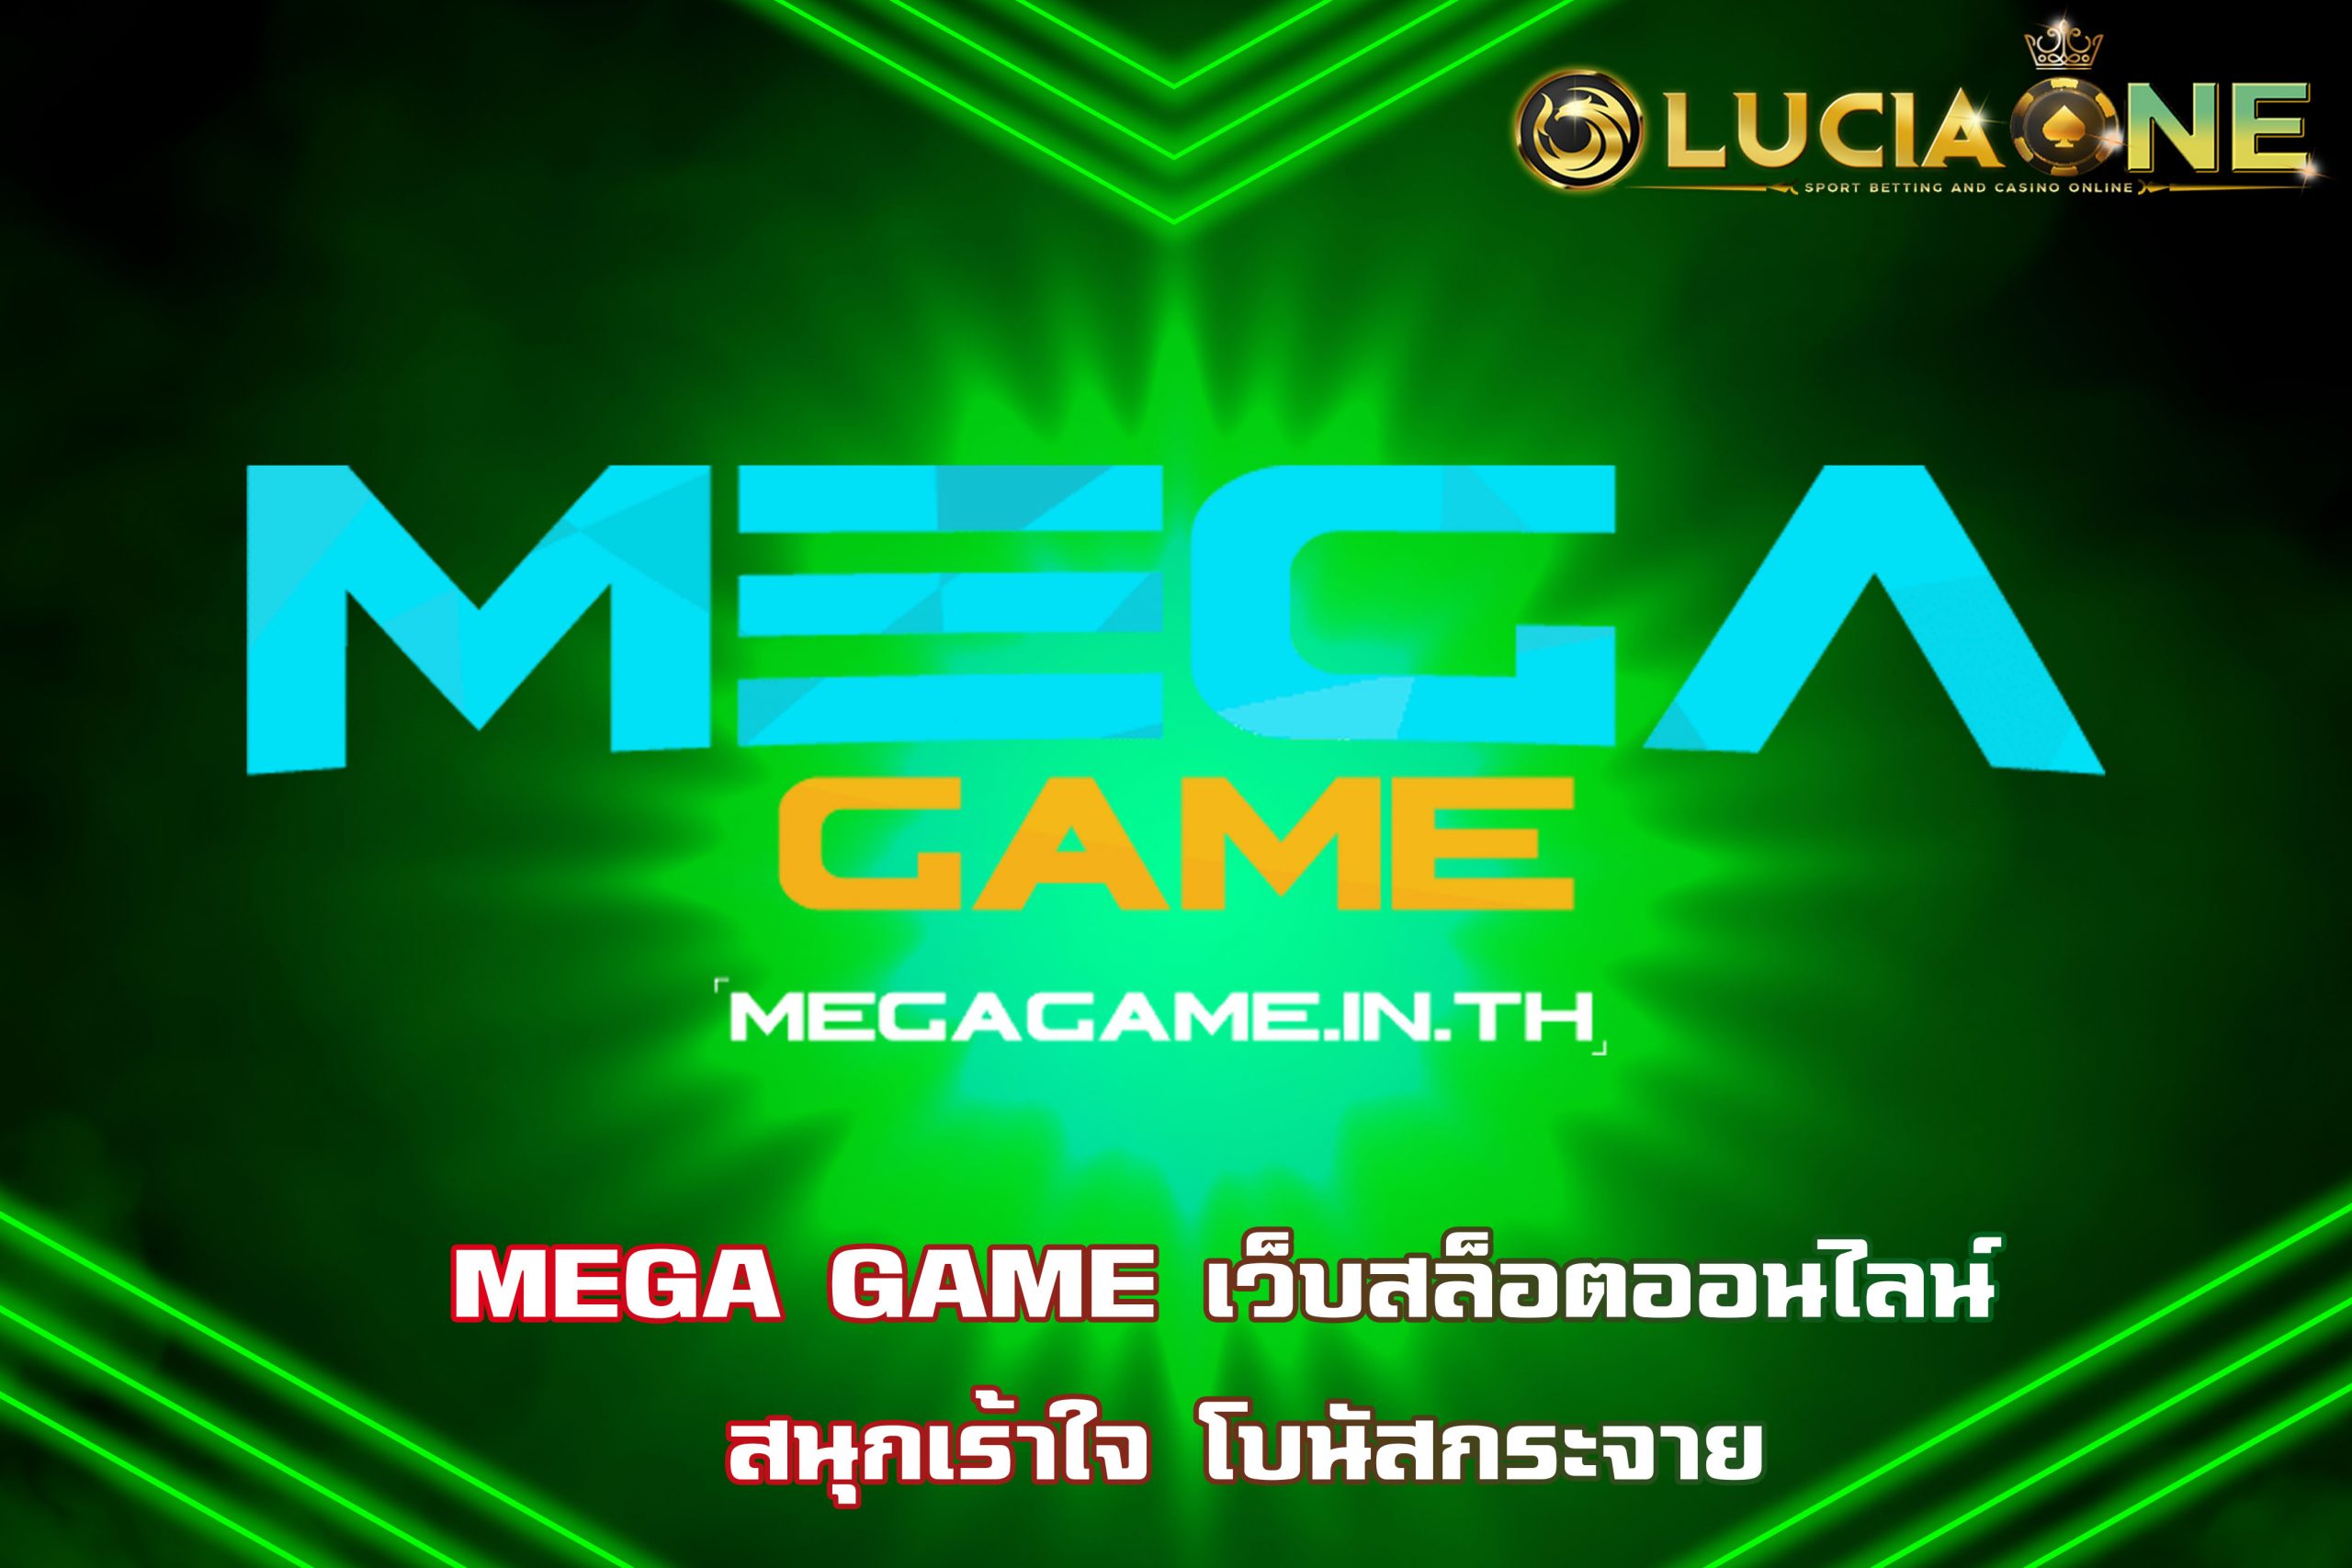 MEGA GAME เว็บสล็อตออนไลน์ สนุกเร้าใจ โบนัสกระจาย